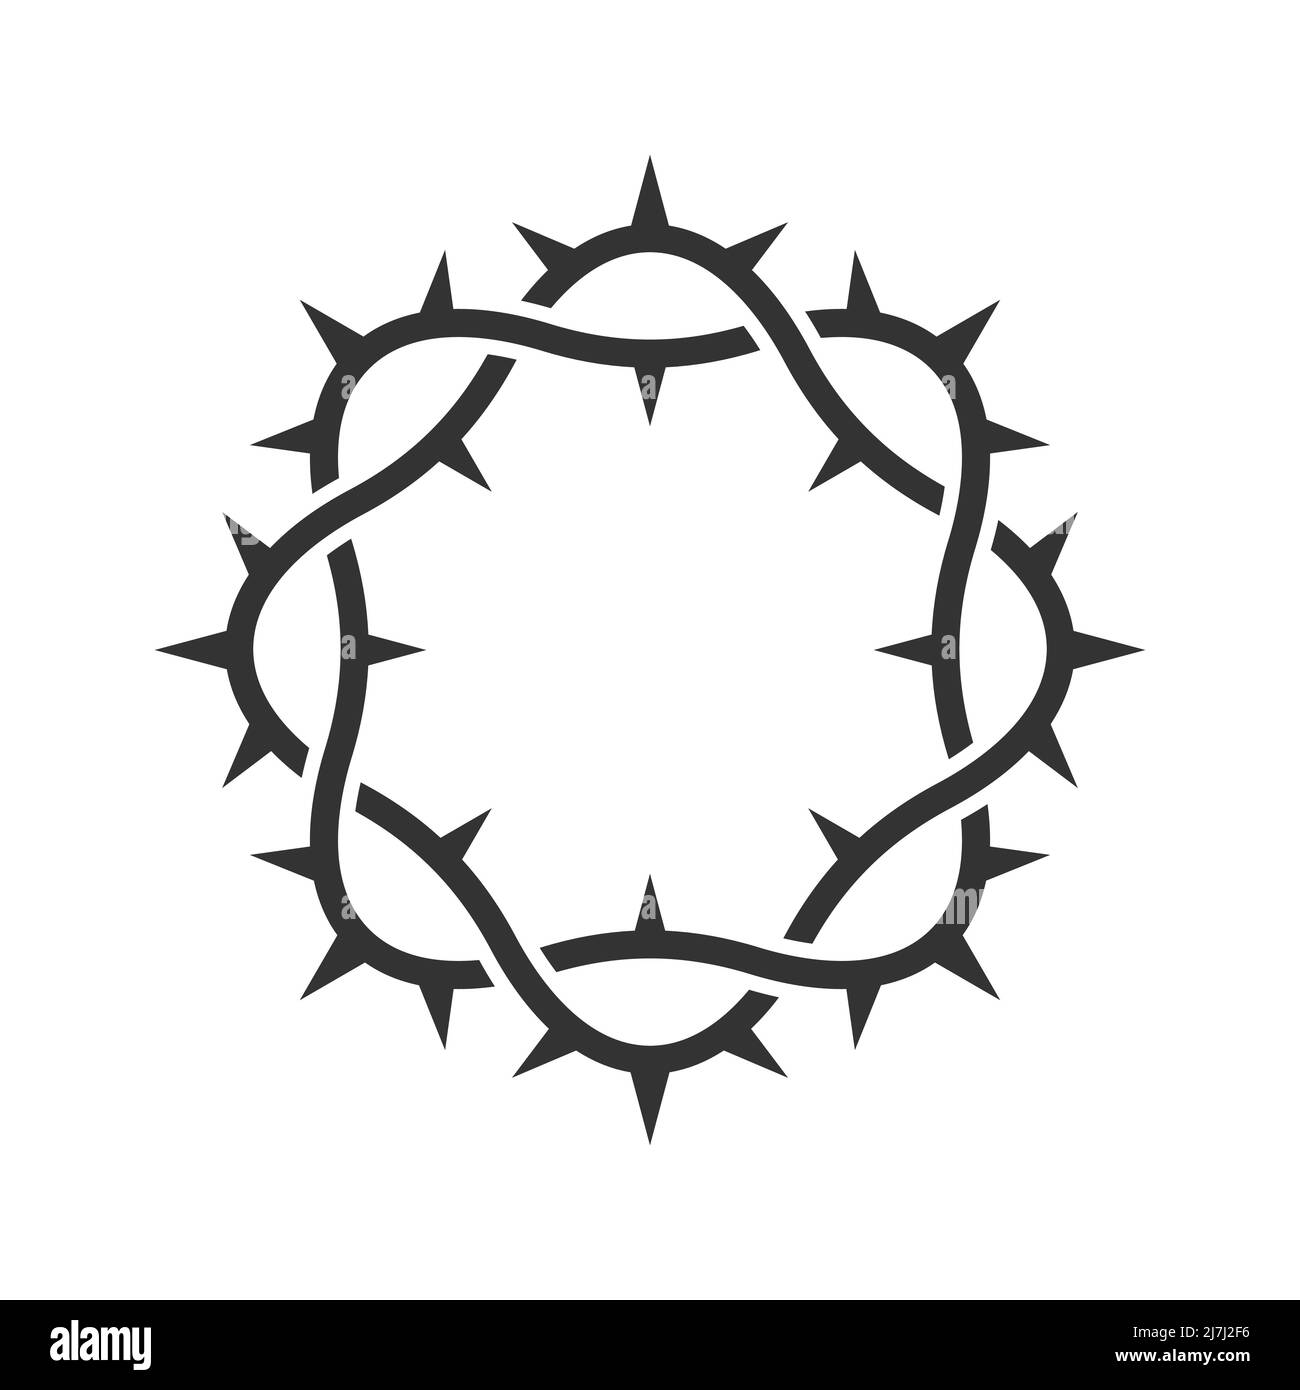 Logo Vector. Corona di spine del Signore e Salvatore Gesù Cristo. Illustrazione Vettoriale